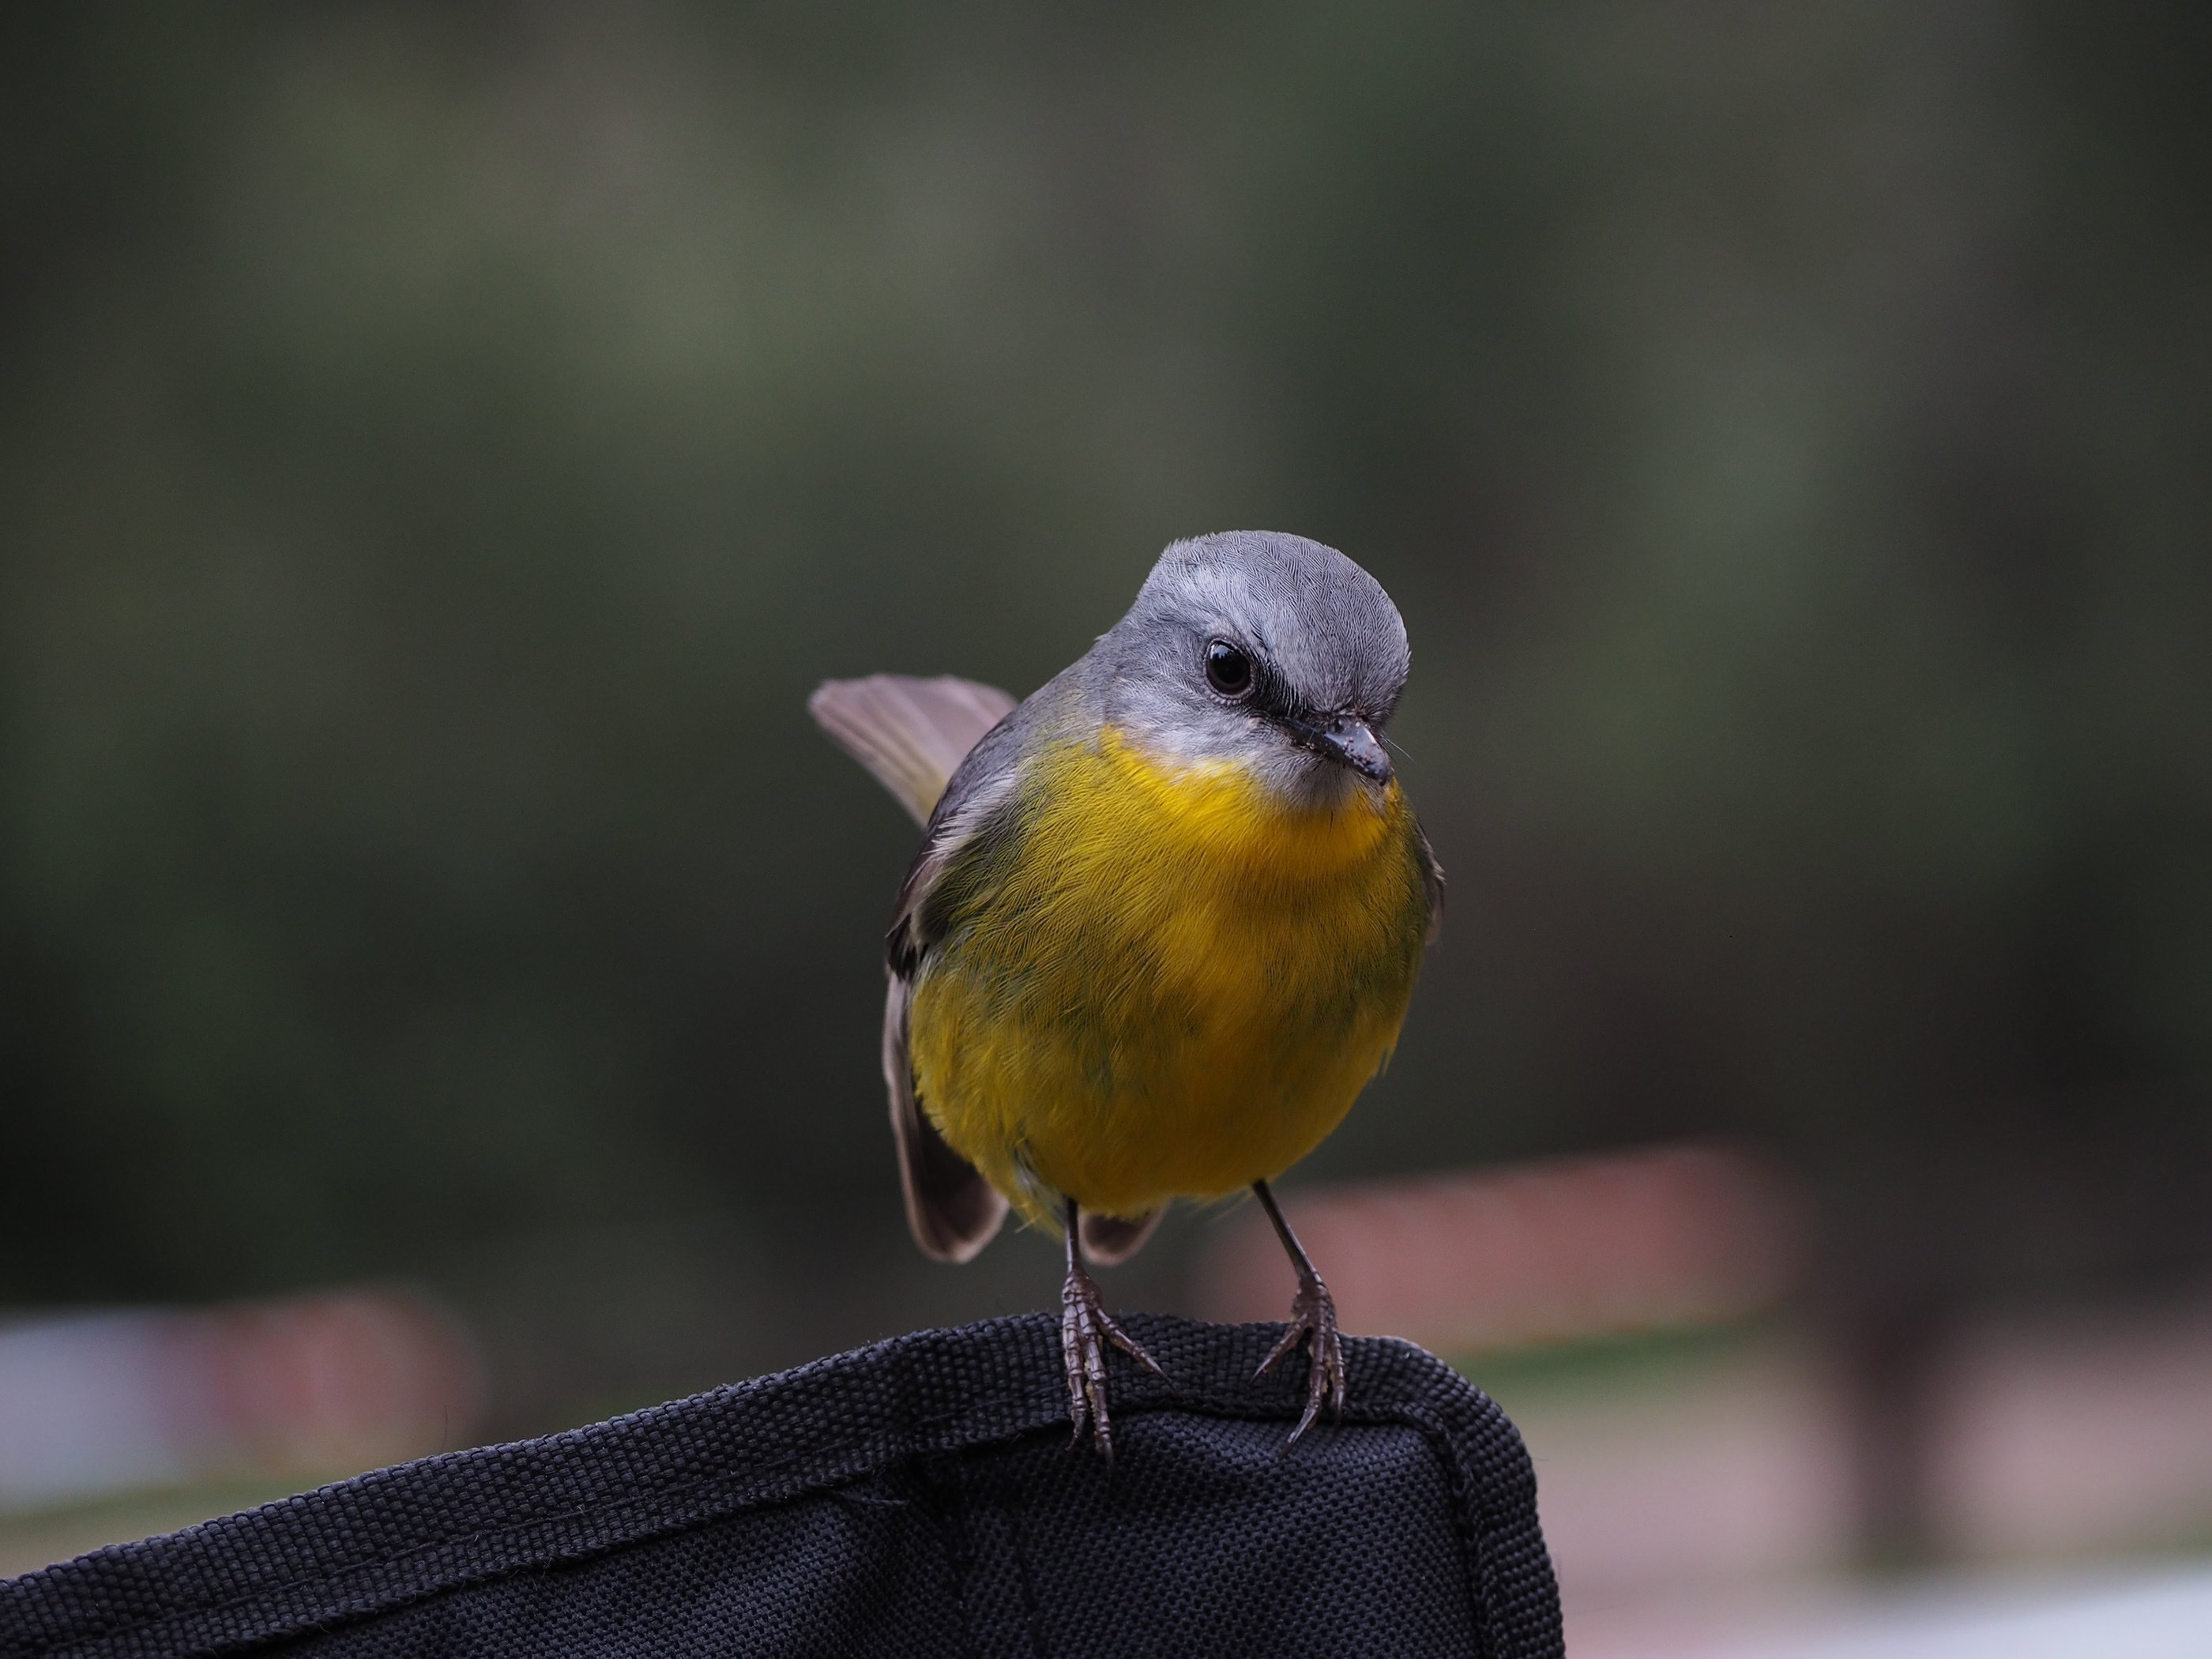 Маленькая птичка с желтой грудкой. Птица с желтым воротником. Птичка с желтым носом. Птица с желтыми ногами и клювом. Маленькая желто серая птичка